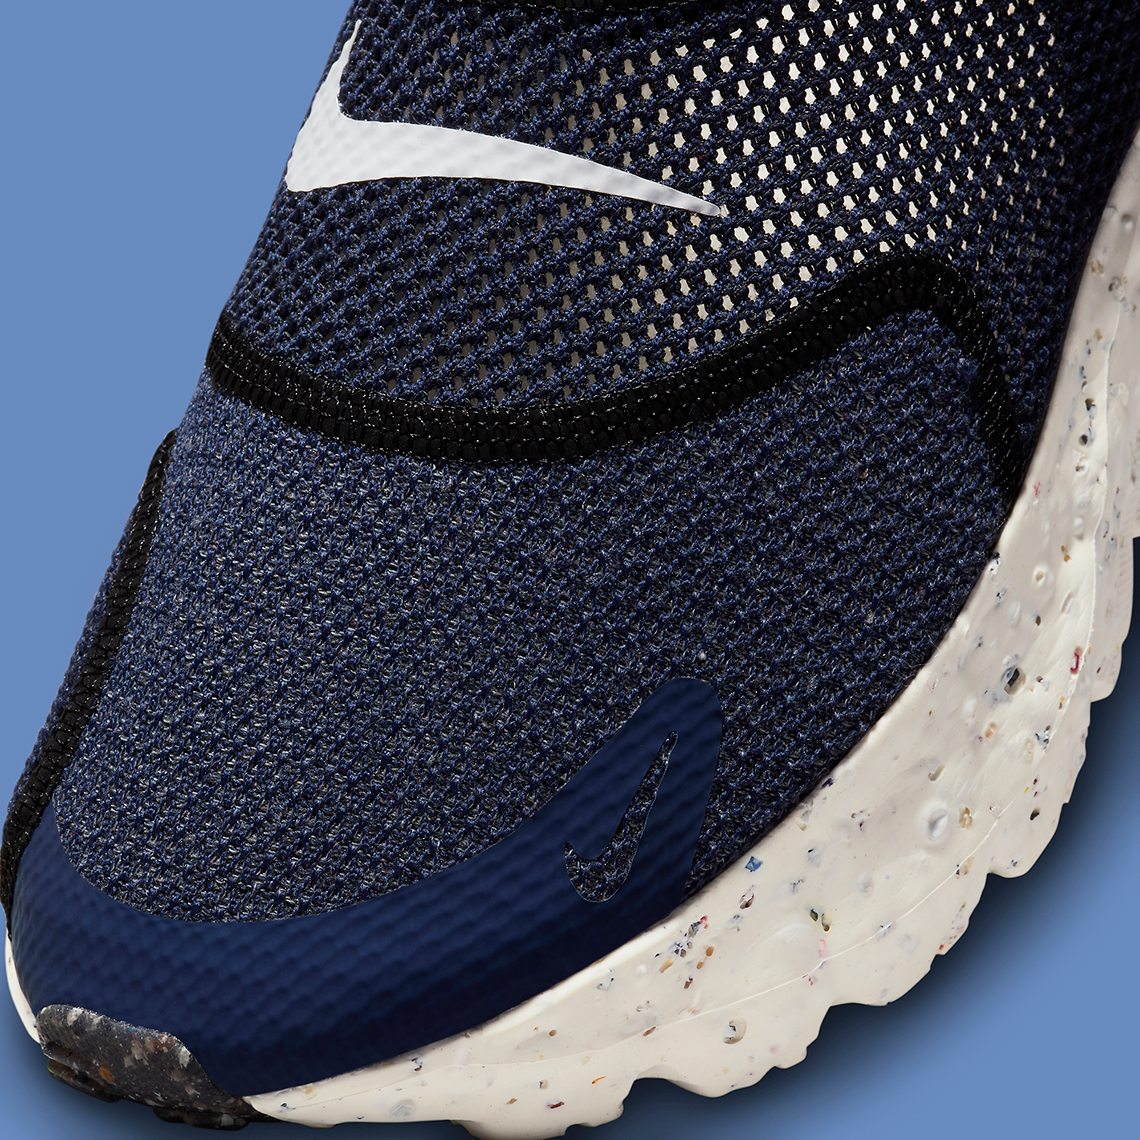 Nike Glide FlyEase DJ9816-400 Release Date | SneakerNews.com